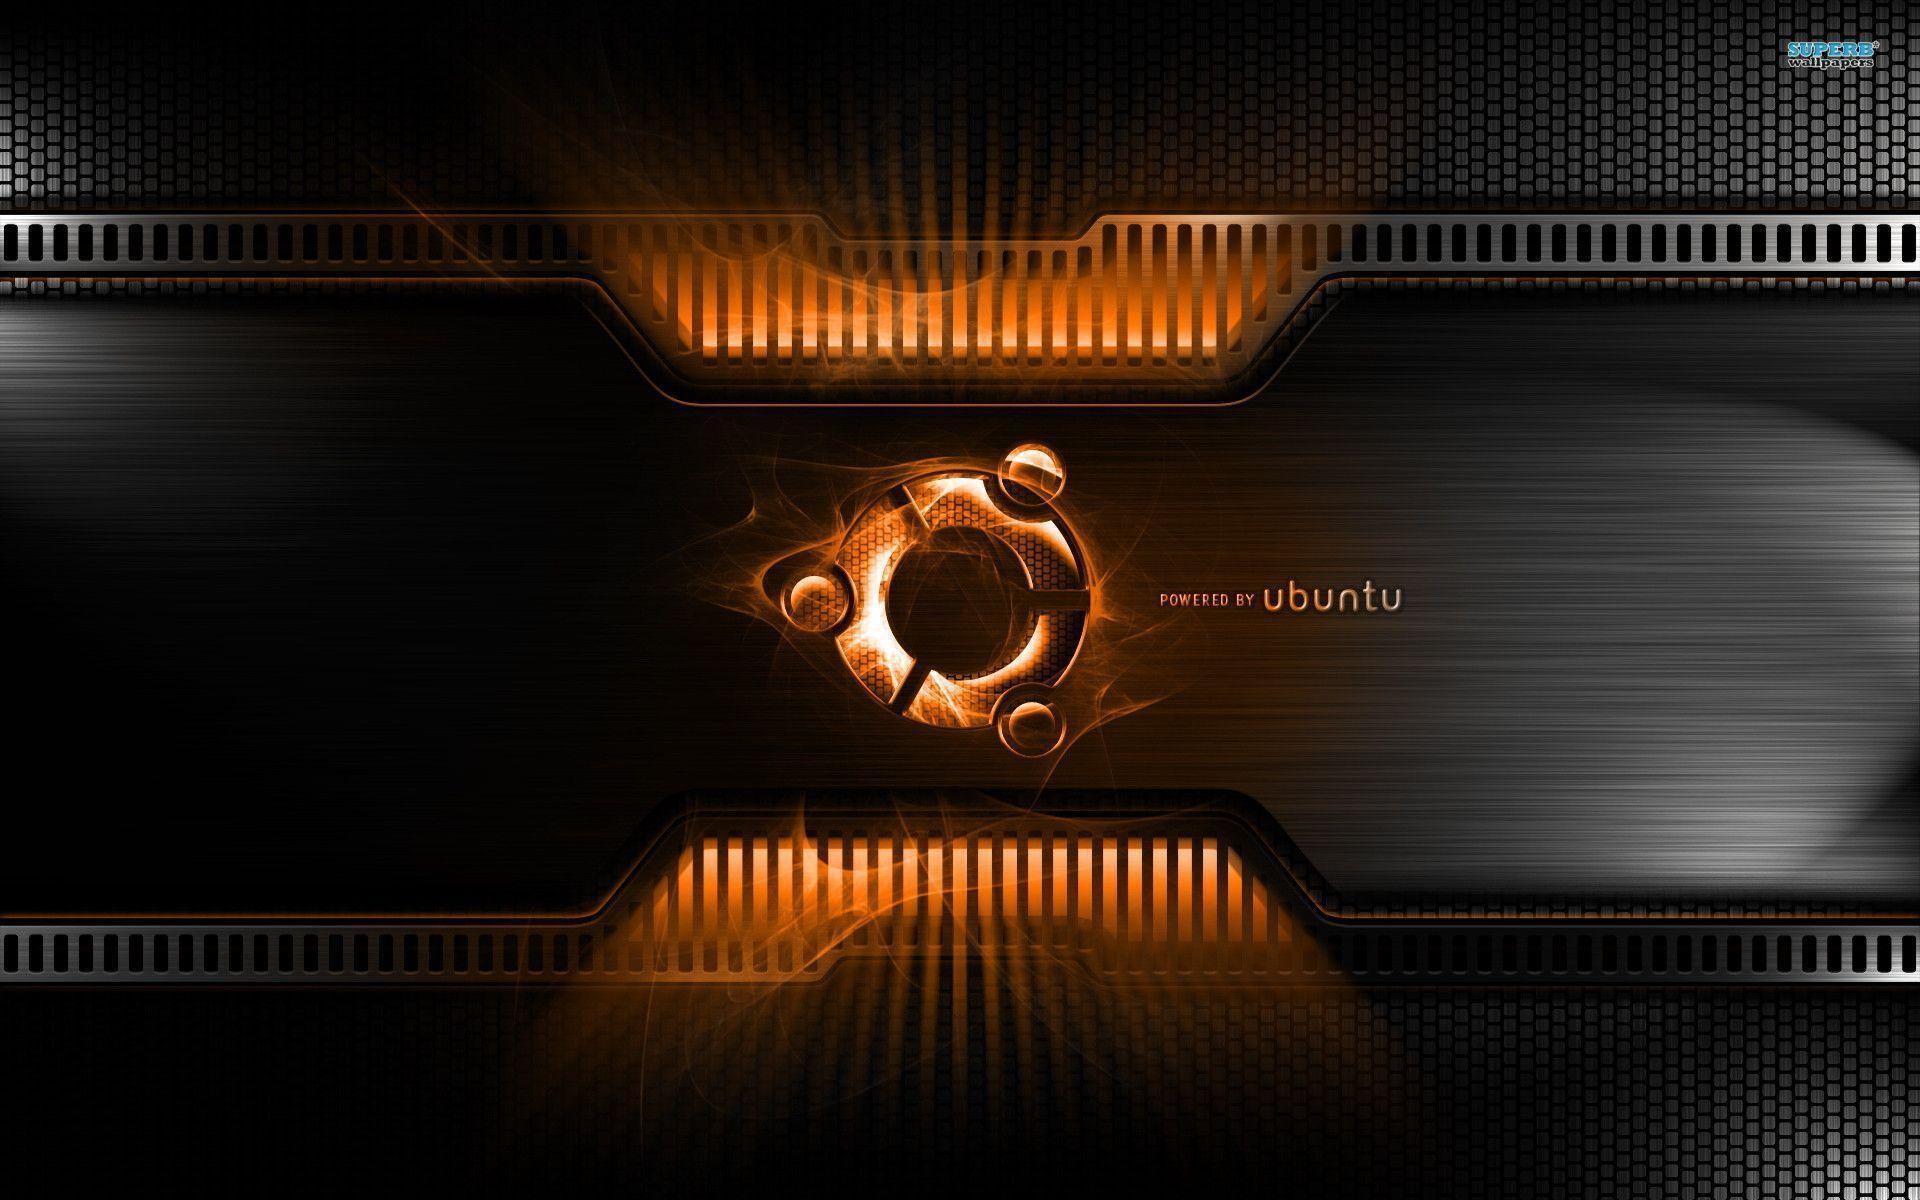 Ubuntu Wallpaper Desktop